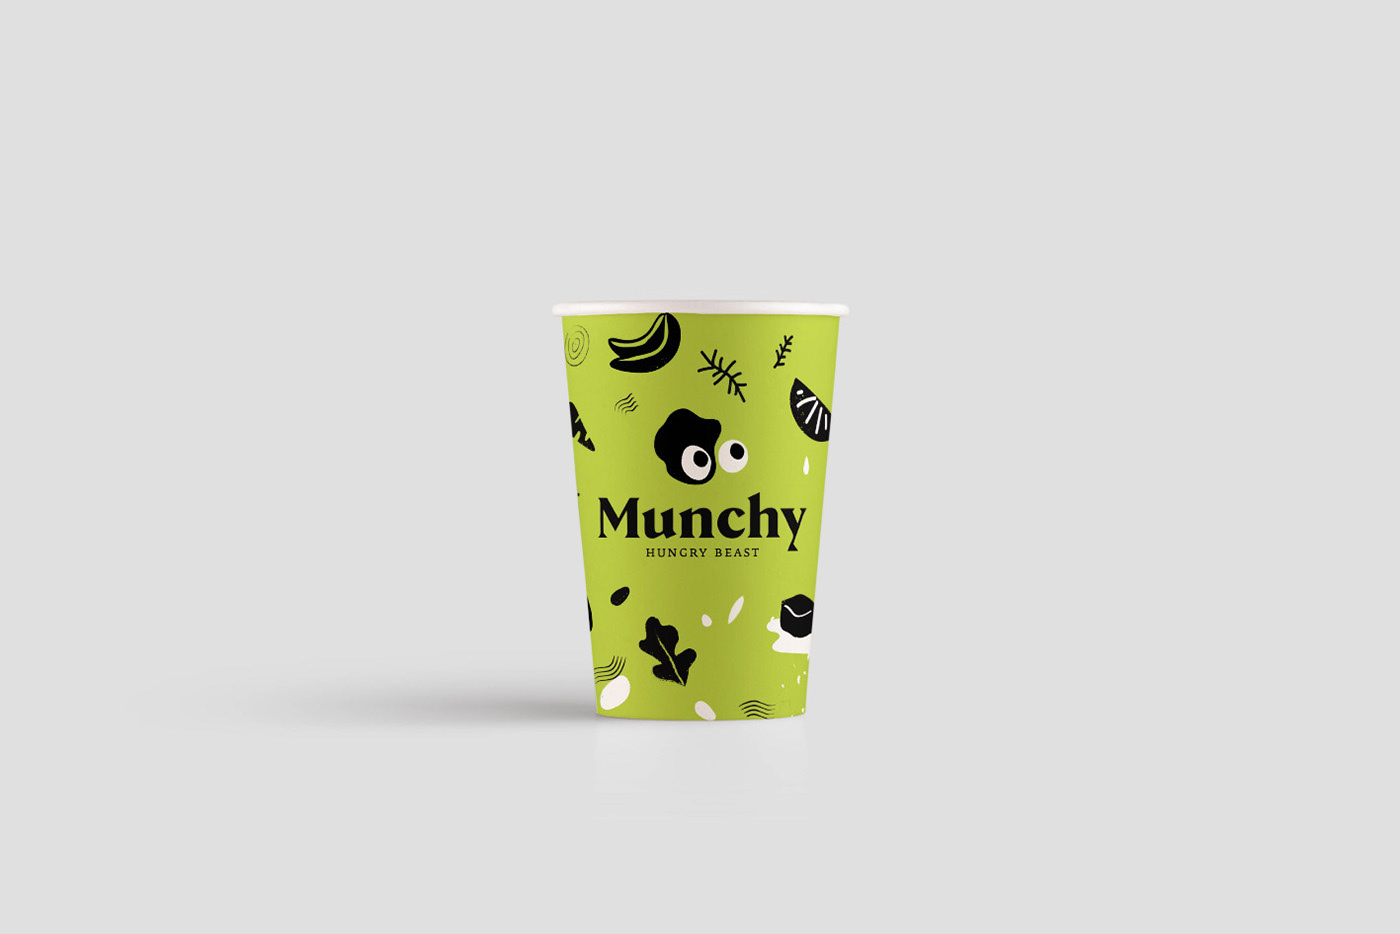 Munchy\/VisualIdentity